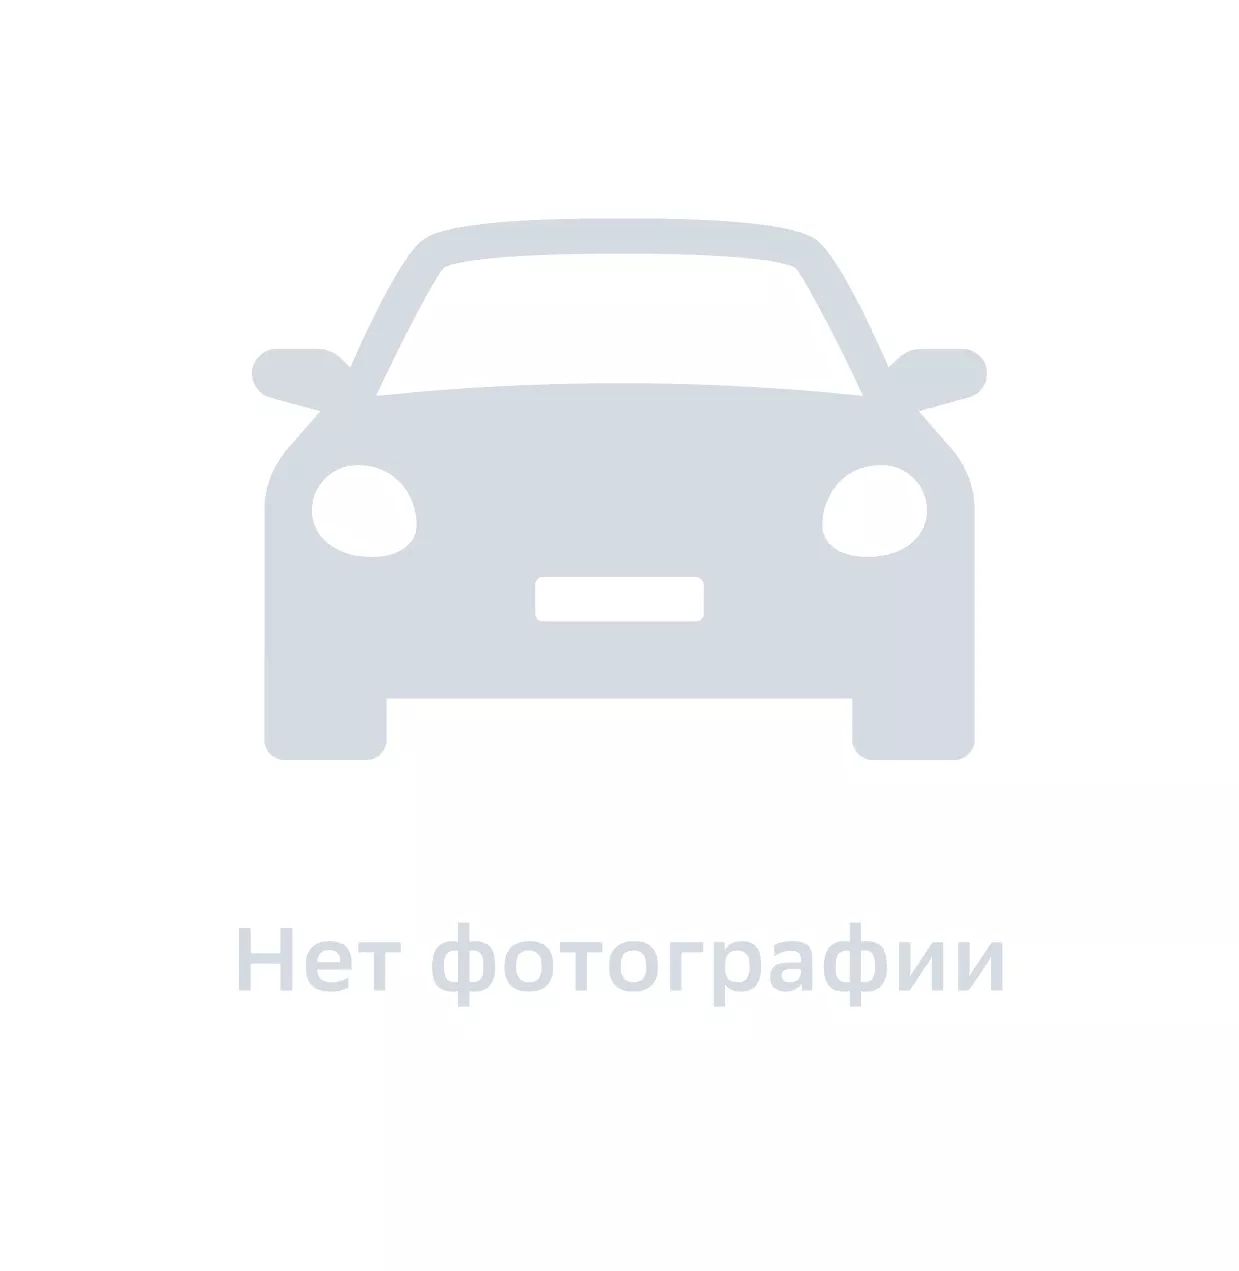 Прокладка ДВС, Hyundai-KIA, 253234D100, цена за 1 шт.